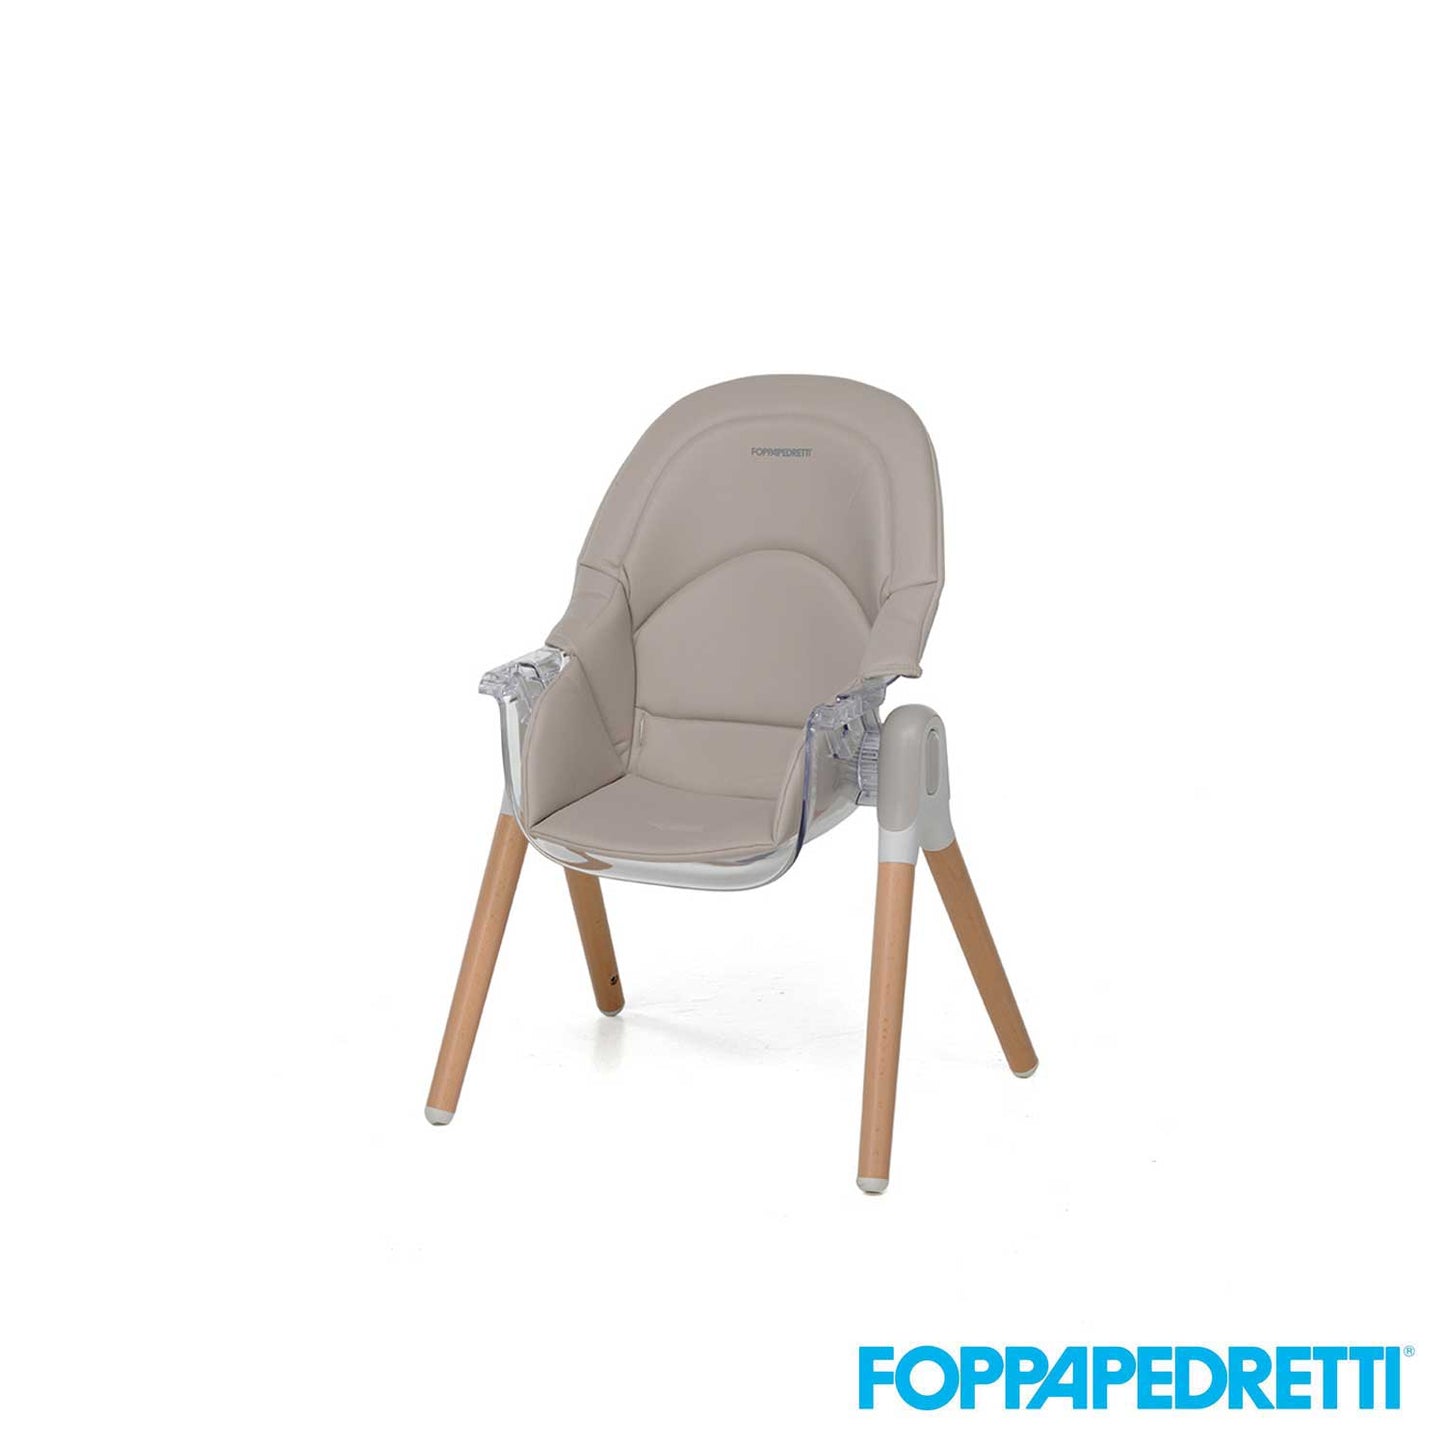 Foppapedretti - Seggiolone 2 in 1 Bonito